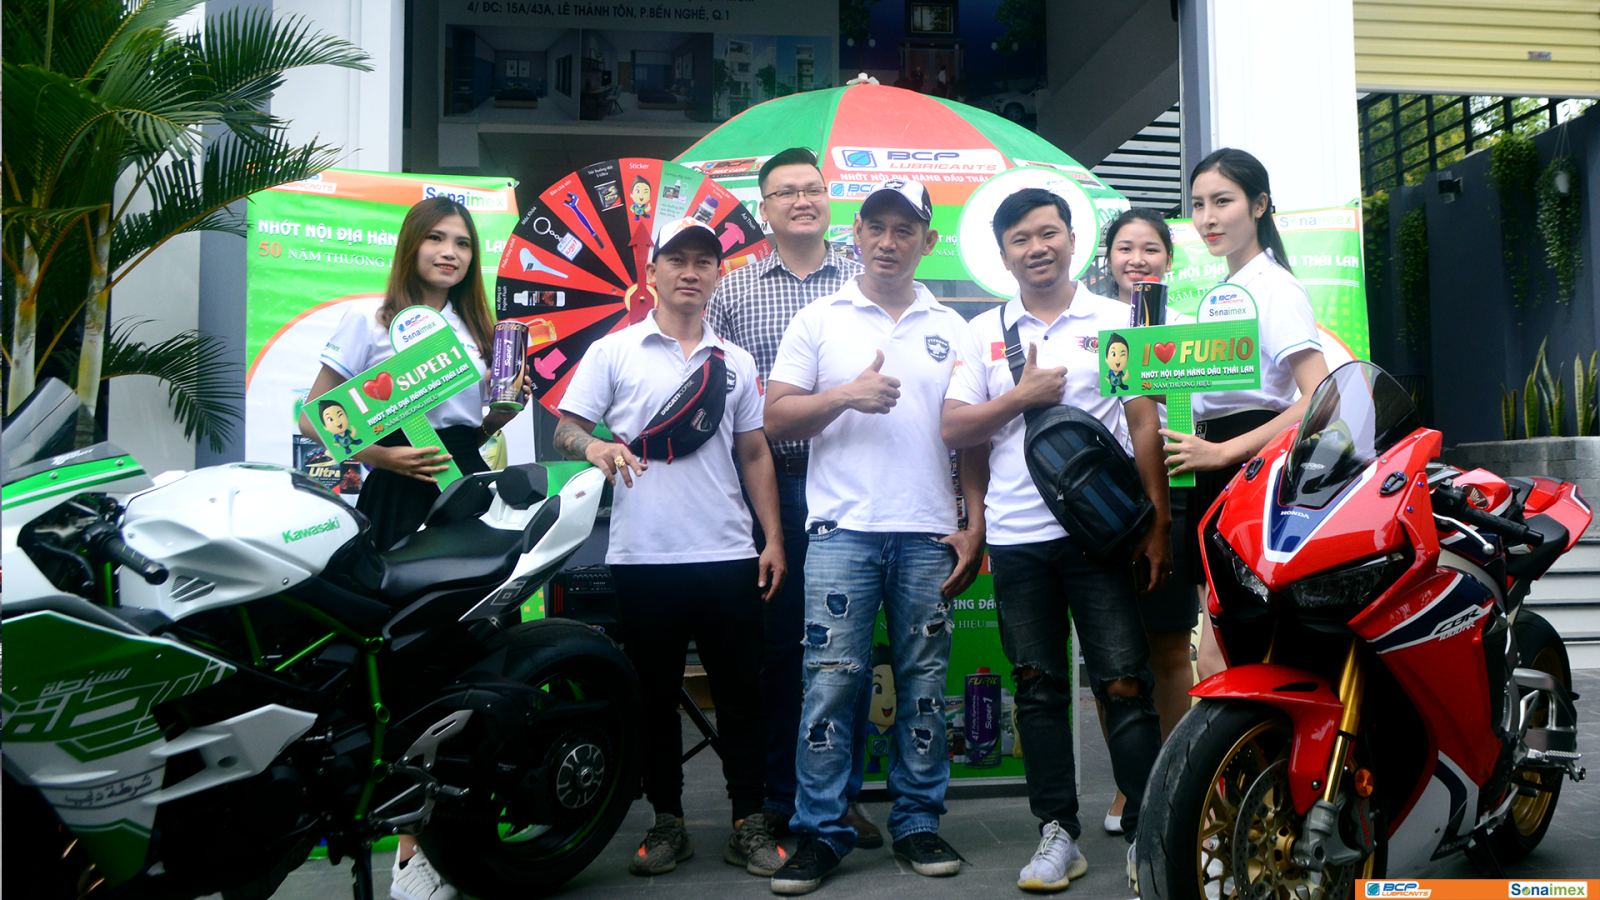 Hình ảnh tại event họp mặt biker group Sài Gòn Motorshow